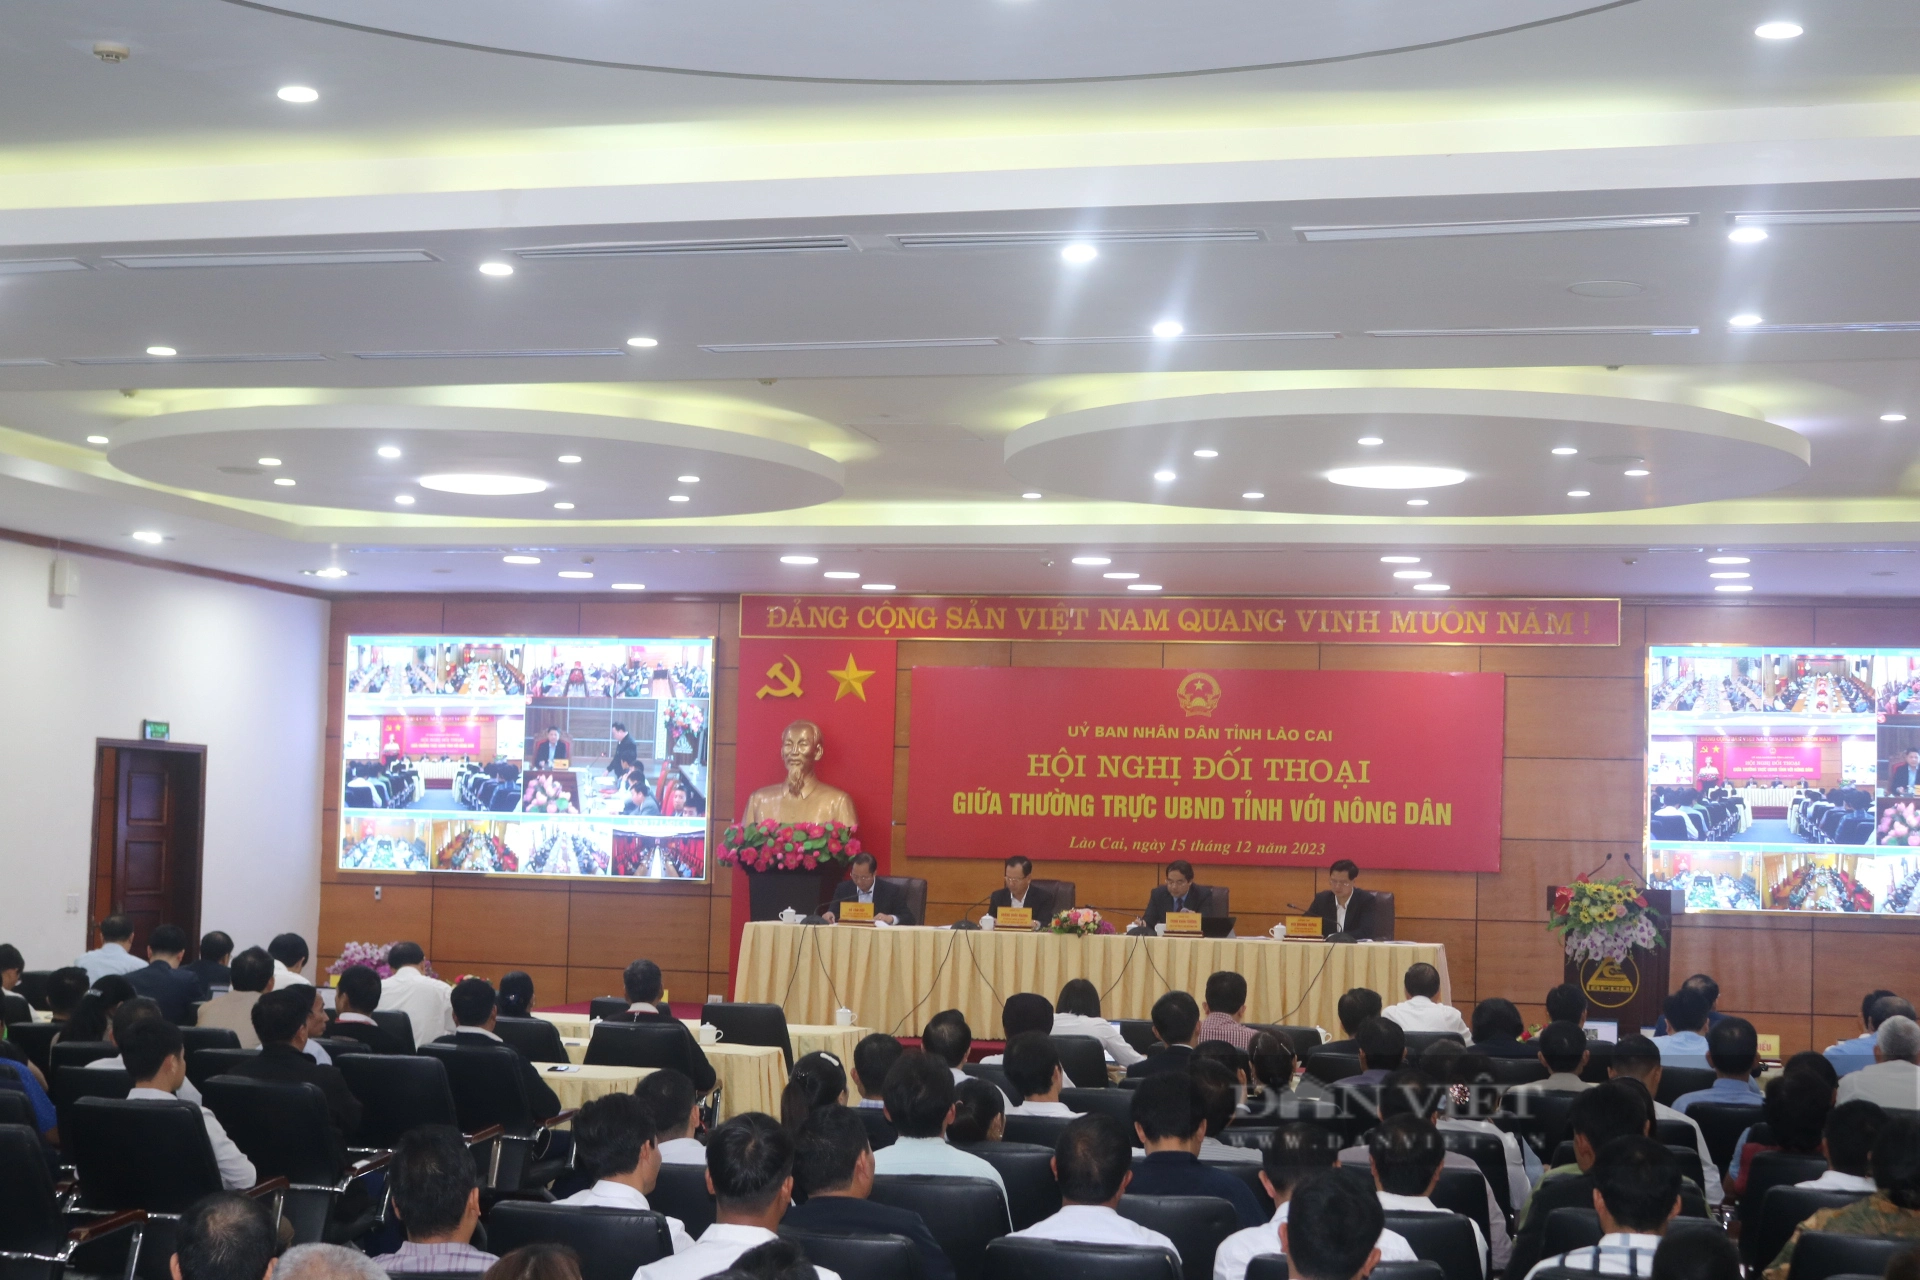 Nhiều ý kiến của nông dân tại Hội nghị đối thoại trực tiếp giữa Thường trực UBND tỉnh Lào Cai với nông dân - Ảnh 1.